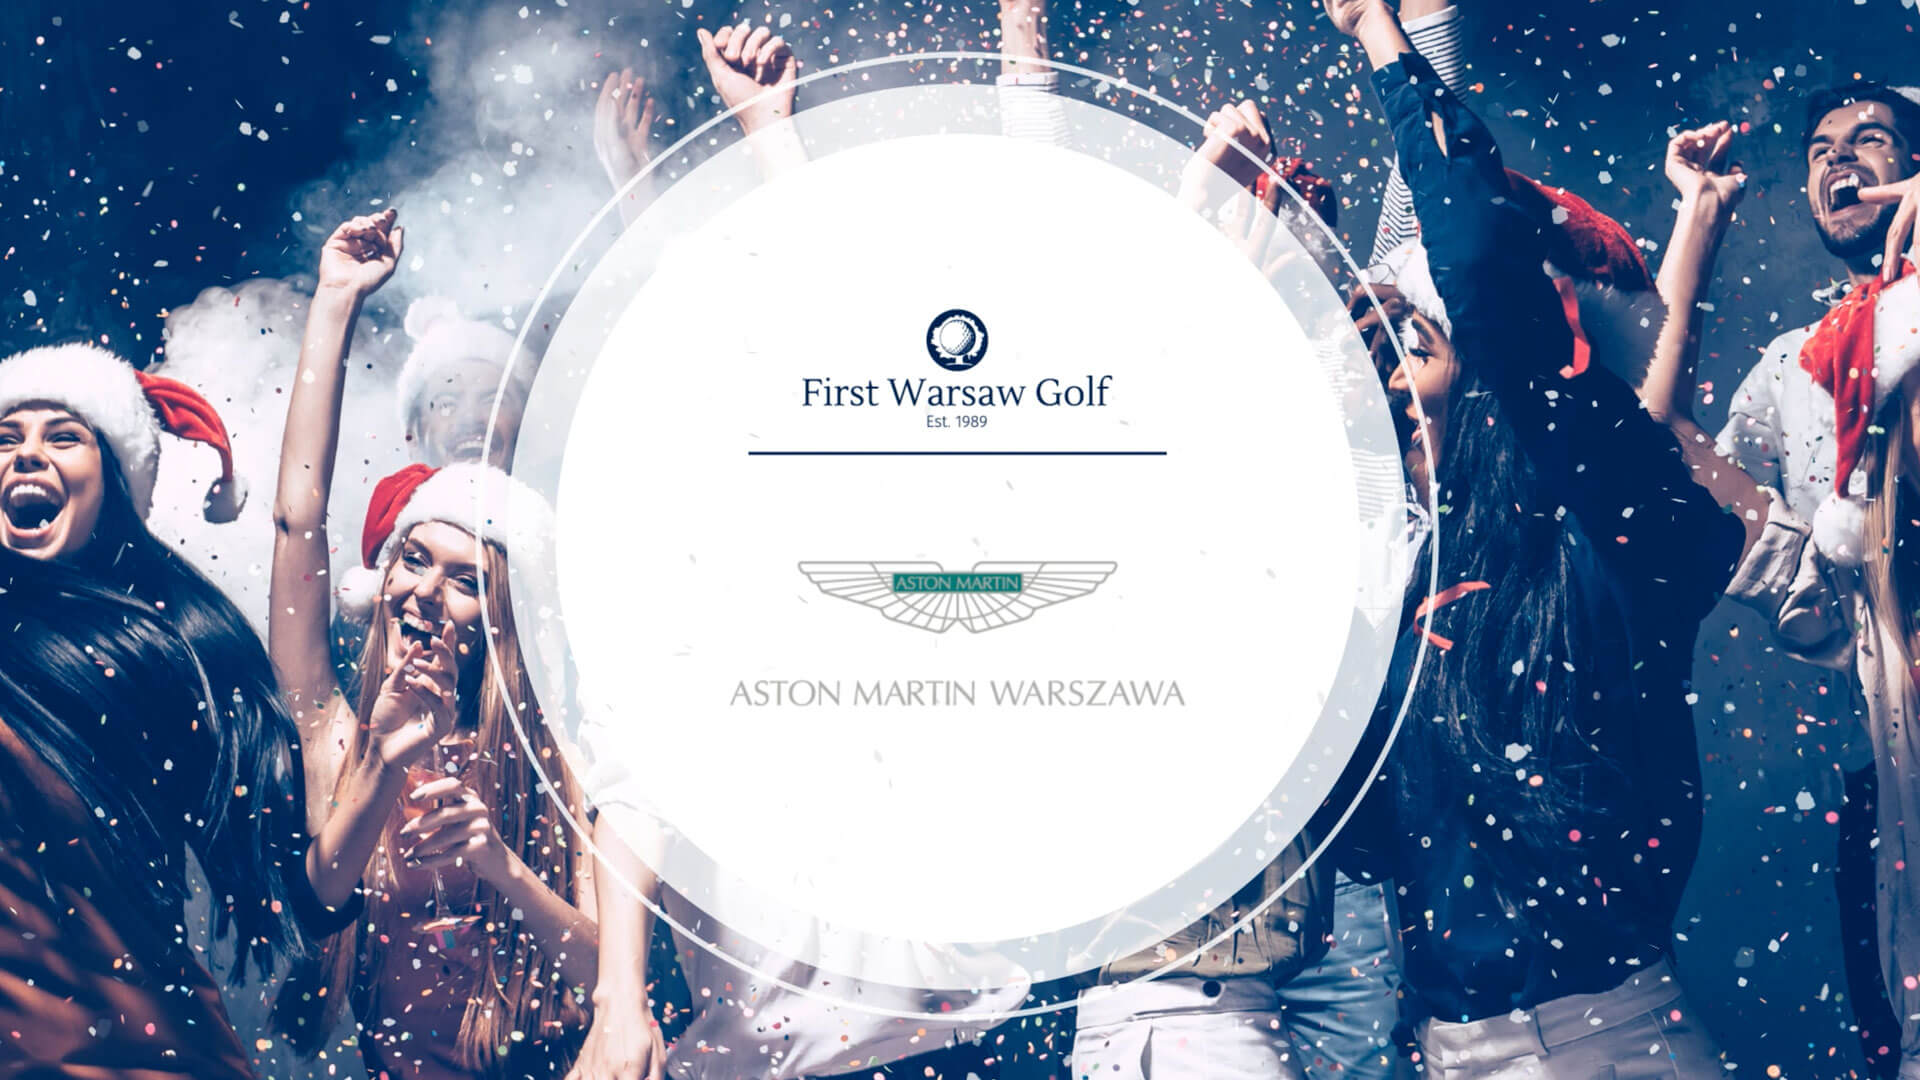 Impreza Świąteczna Prezesa First Warsaw Golf